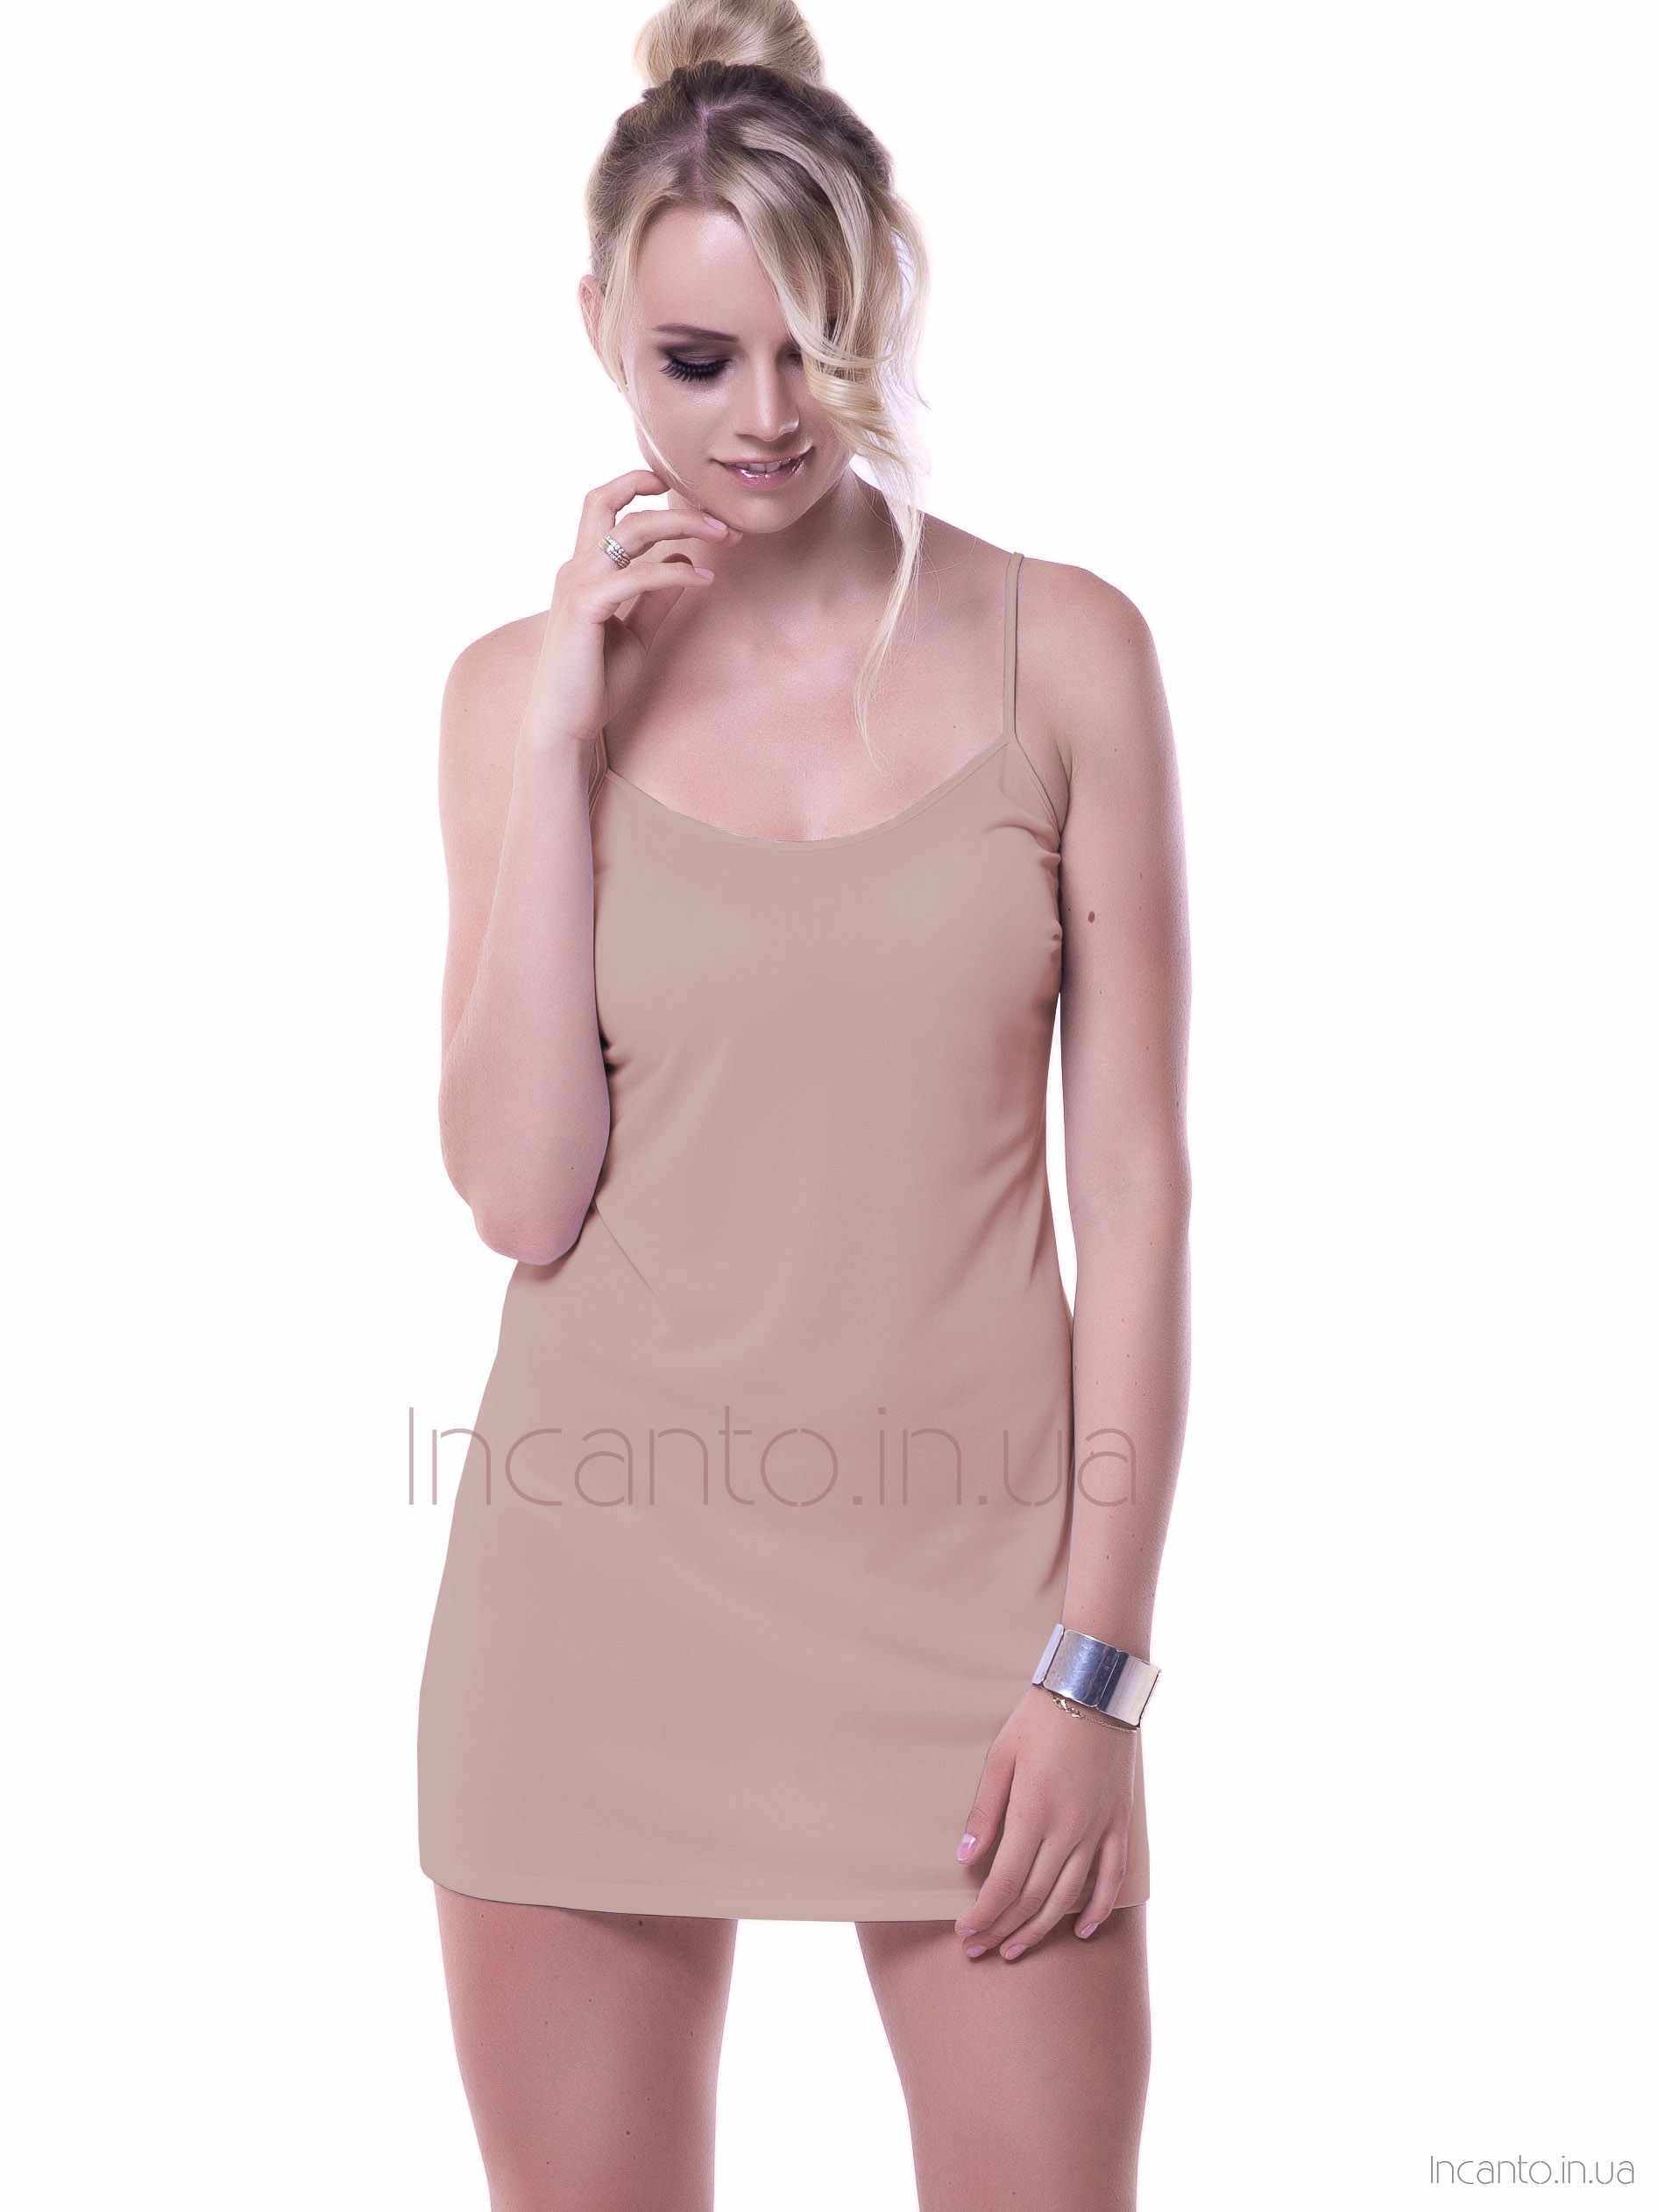 Women's short shirt/slip in soft viscose Mewa 86118 Ofelia maxi #6